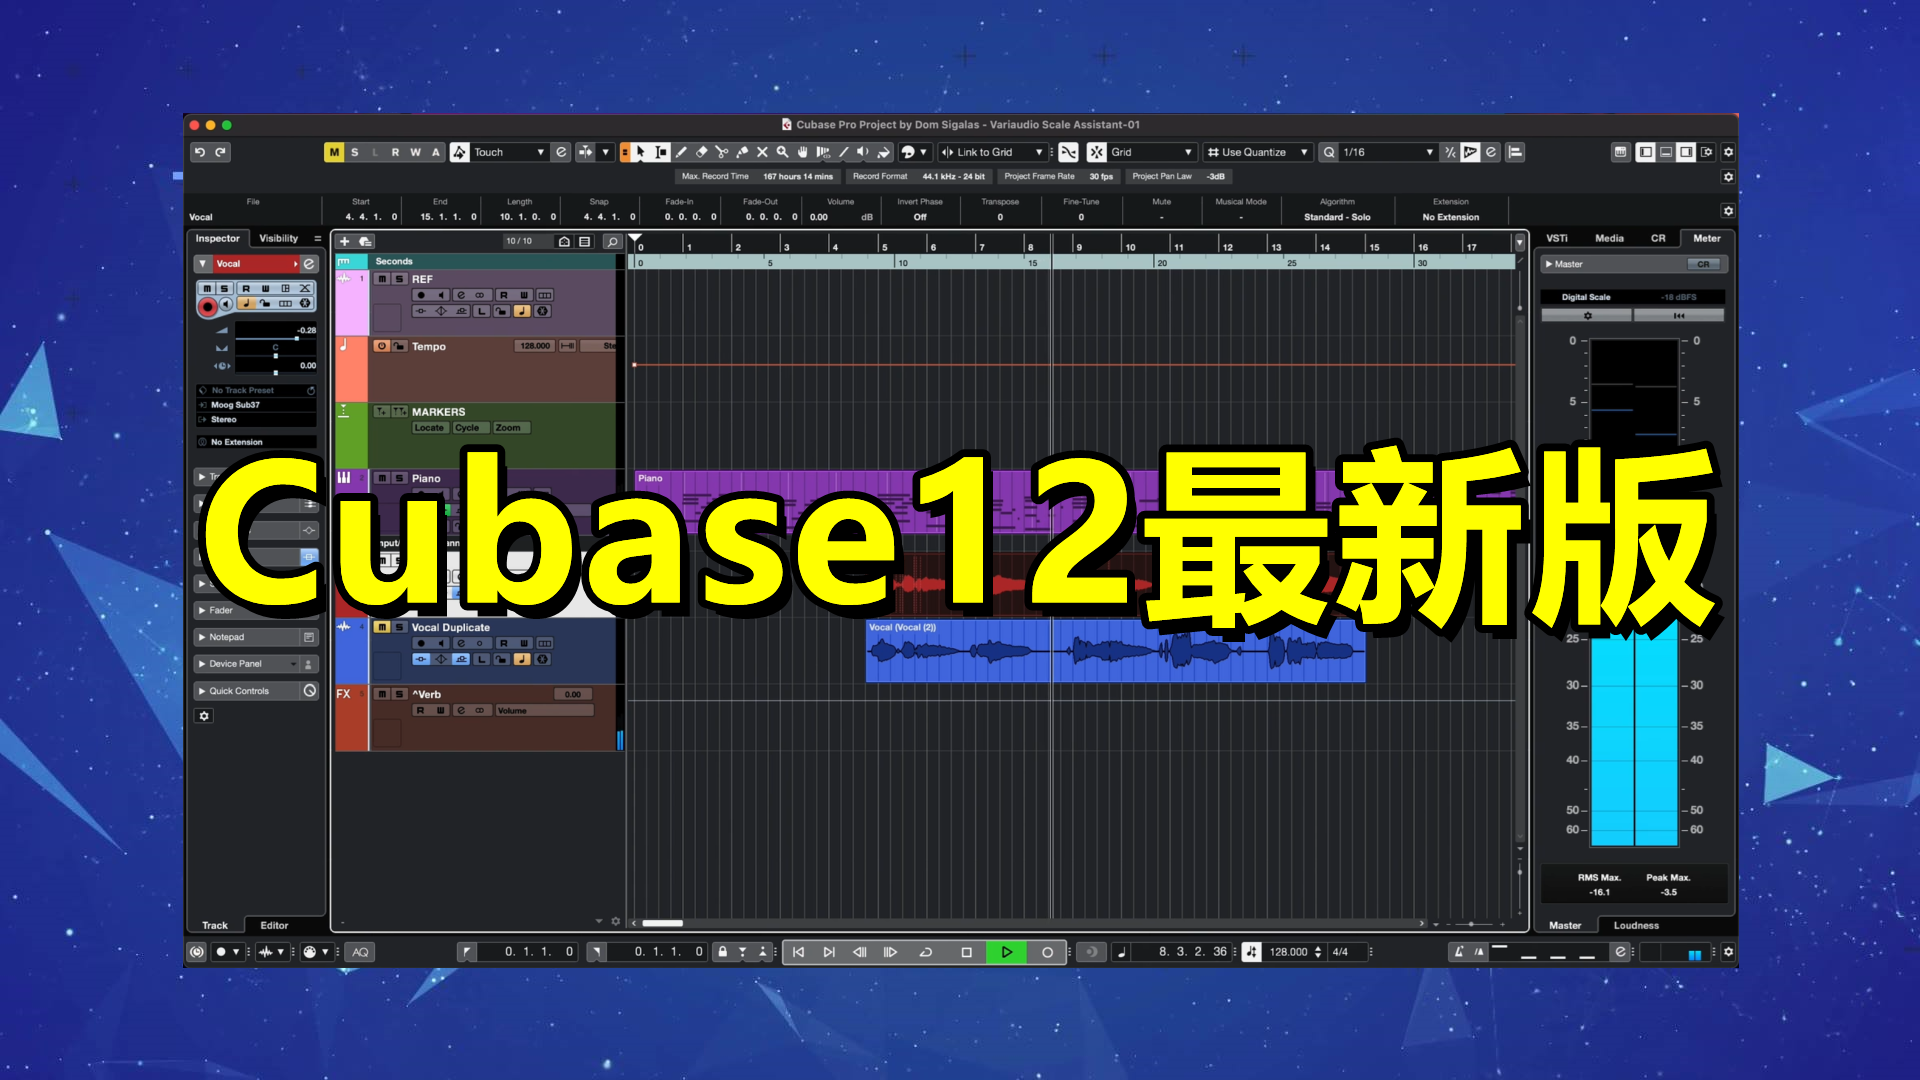 Cubase12最新版安装包 (永久版) 完整功能版 – Cubase12最新版【Windows版】